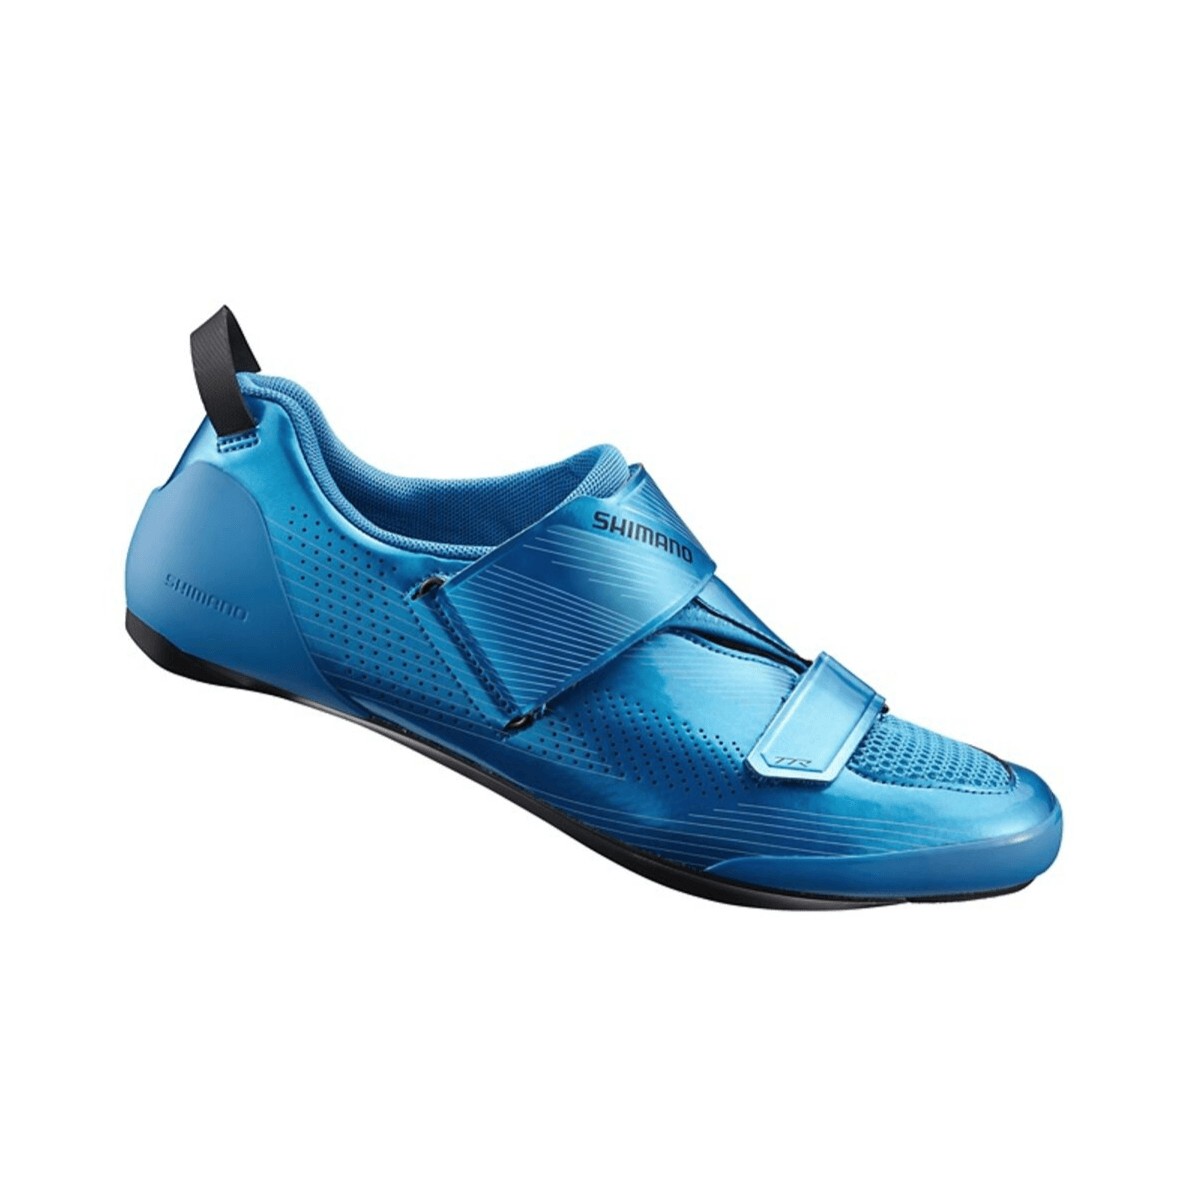 Calçado Shimano TR901 Triathlon Blue com sola de carbono, Tamanho 44,5 - EUR